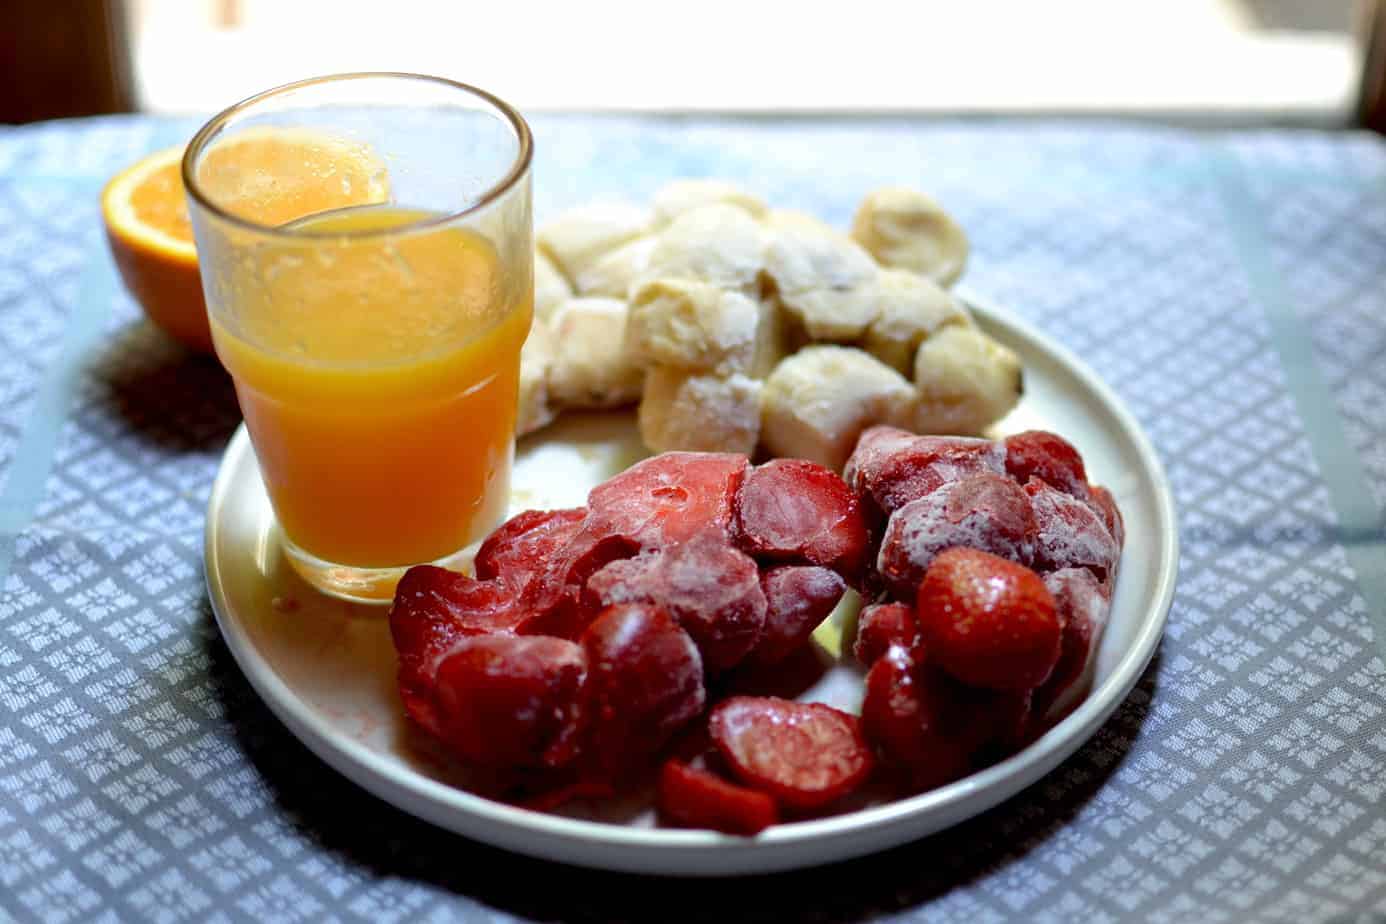 Ingredients for the fruit Frozen Sorbet - Strawberries, Banana and Orange Juice